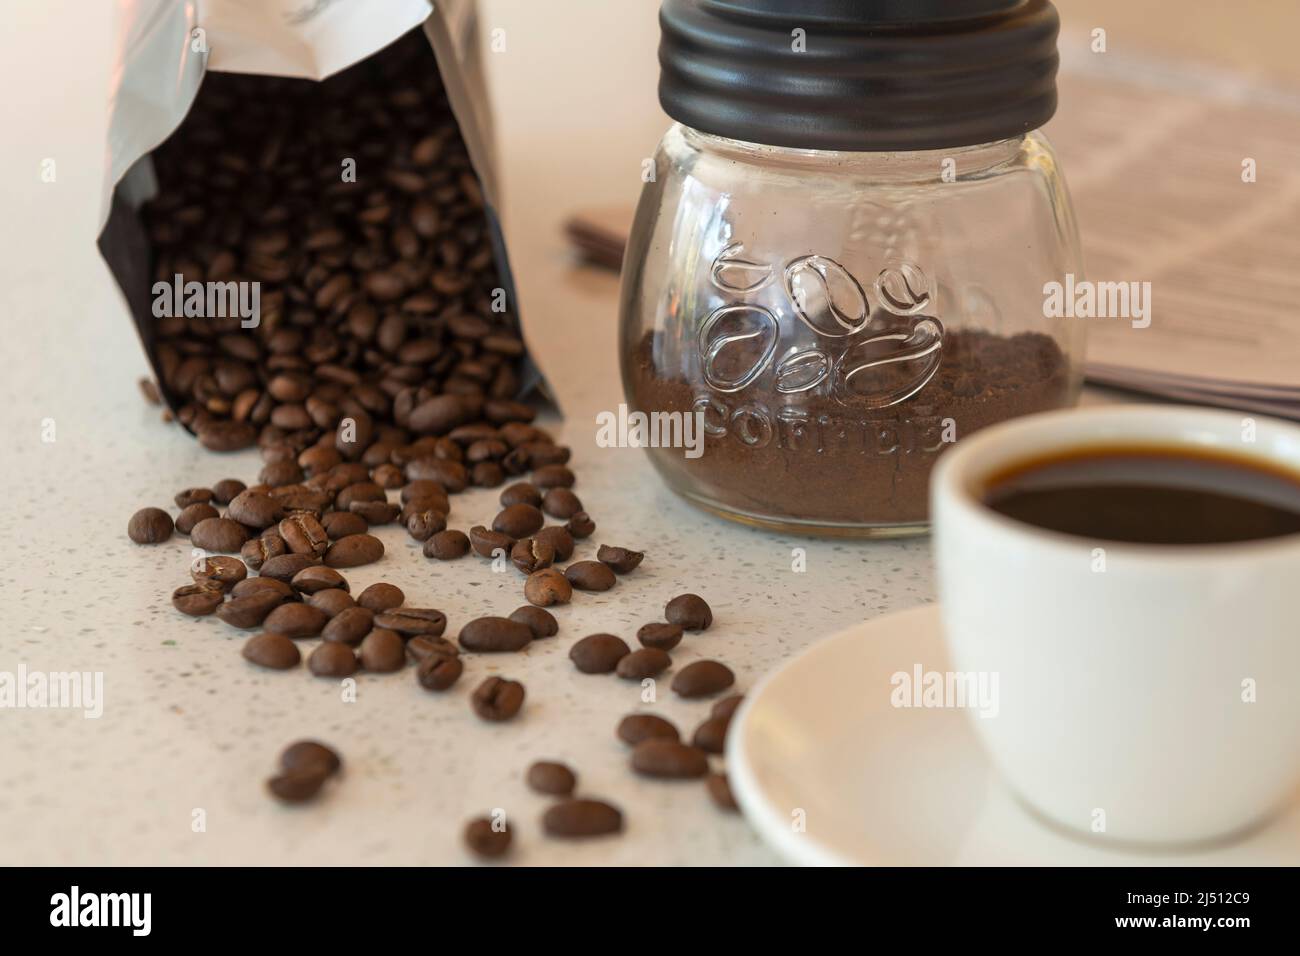 Les grains de café se déversent de leur paquet sur une paillasse avec une tasse de café et de café moulu à proximité. Banque D'Images